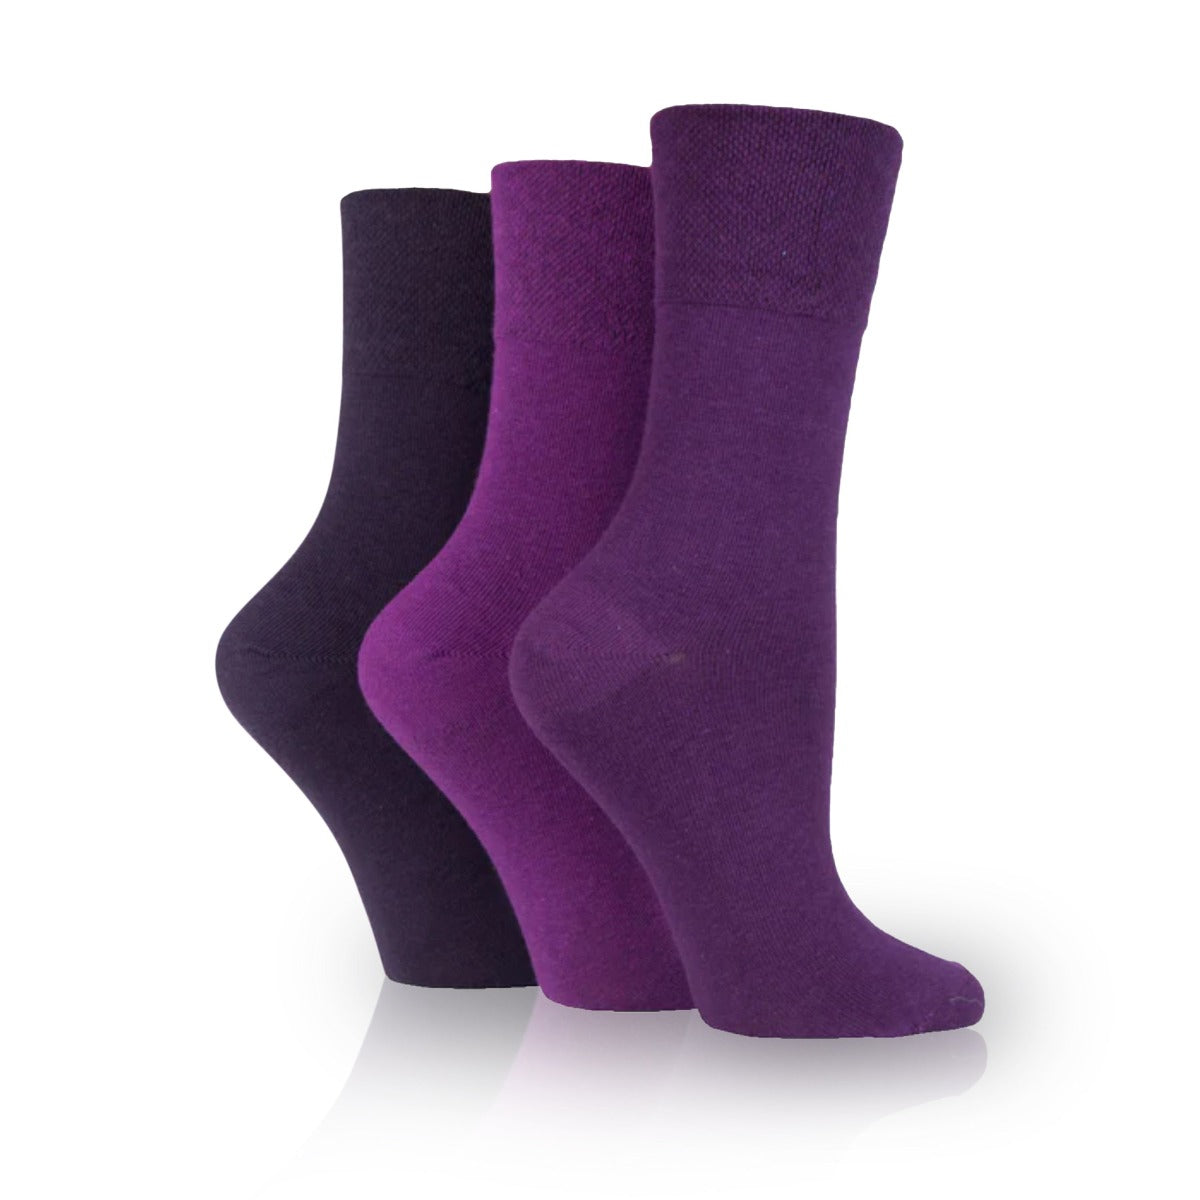 women's non binding socks in purples